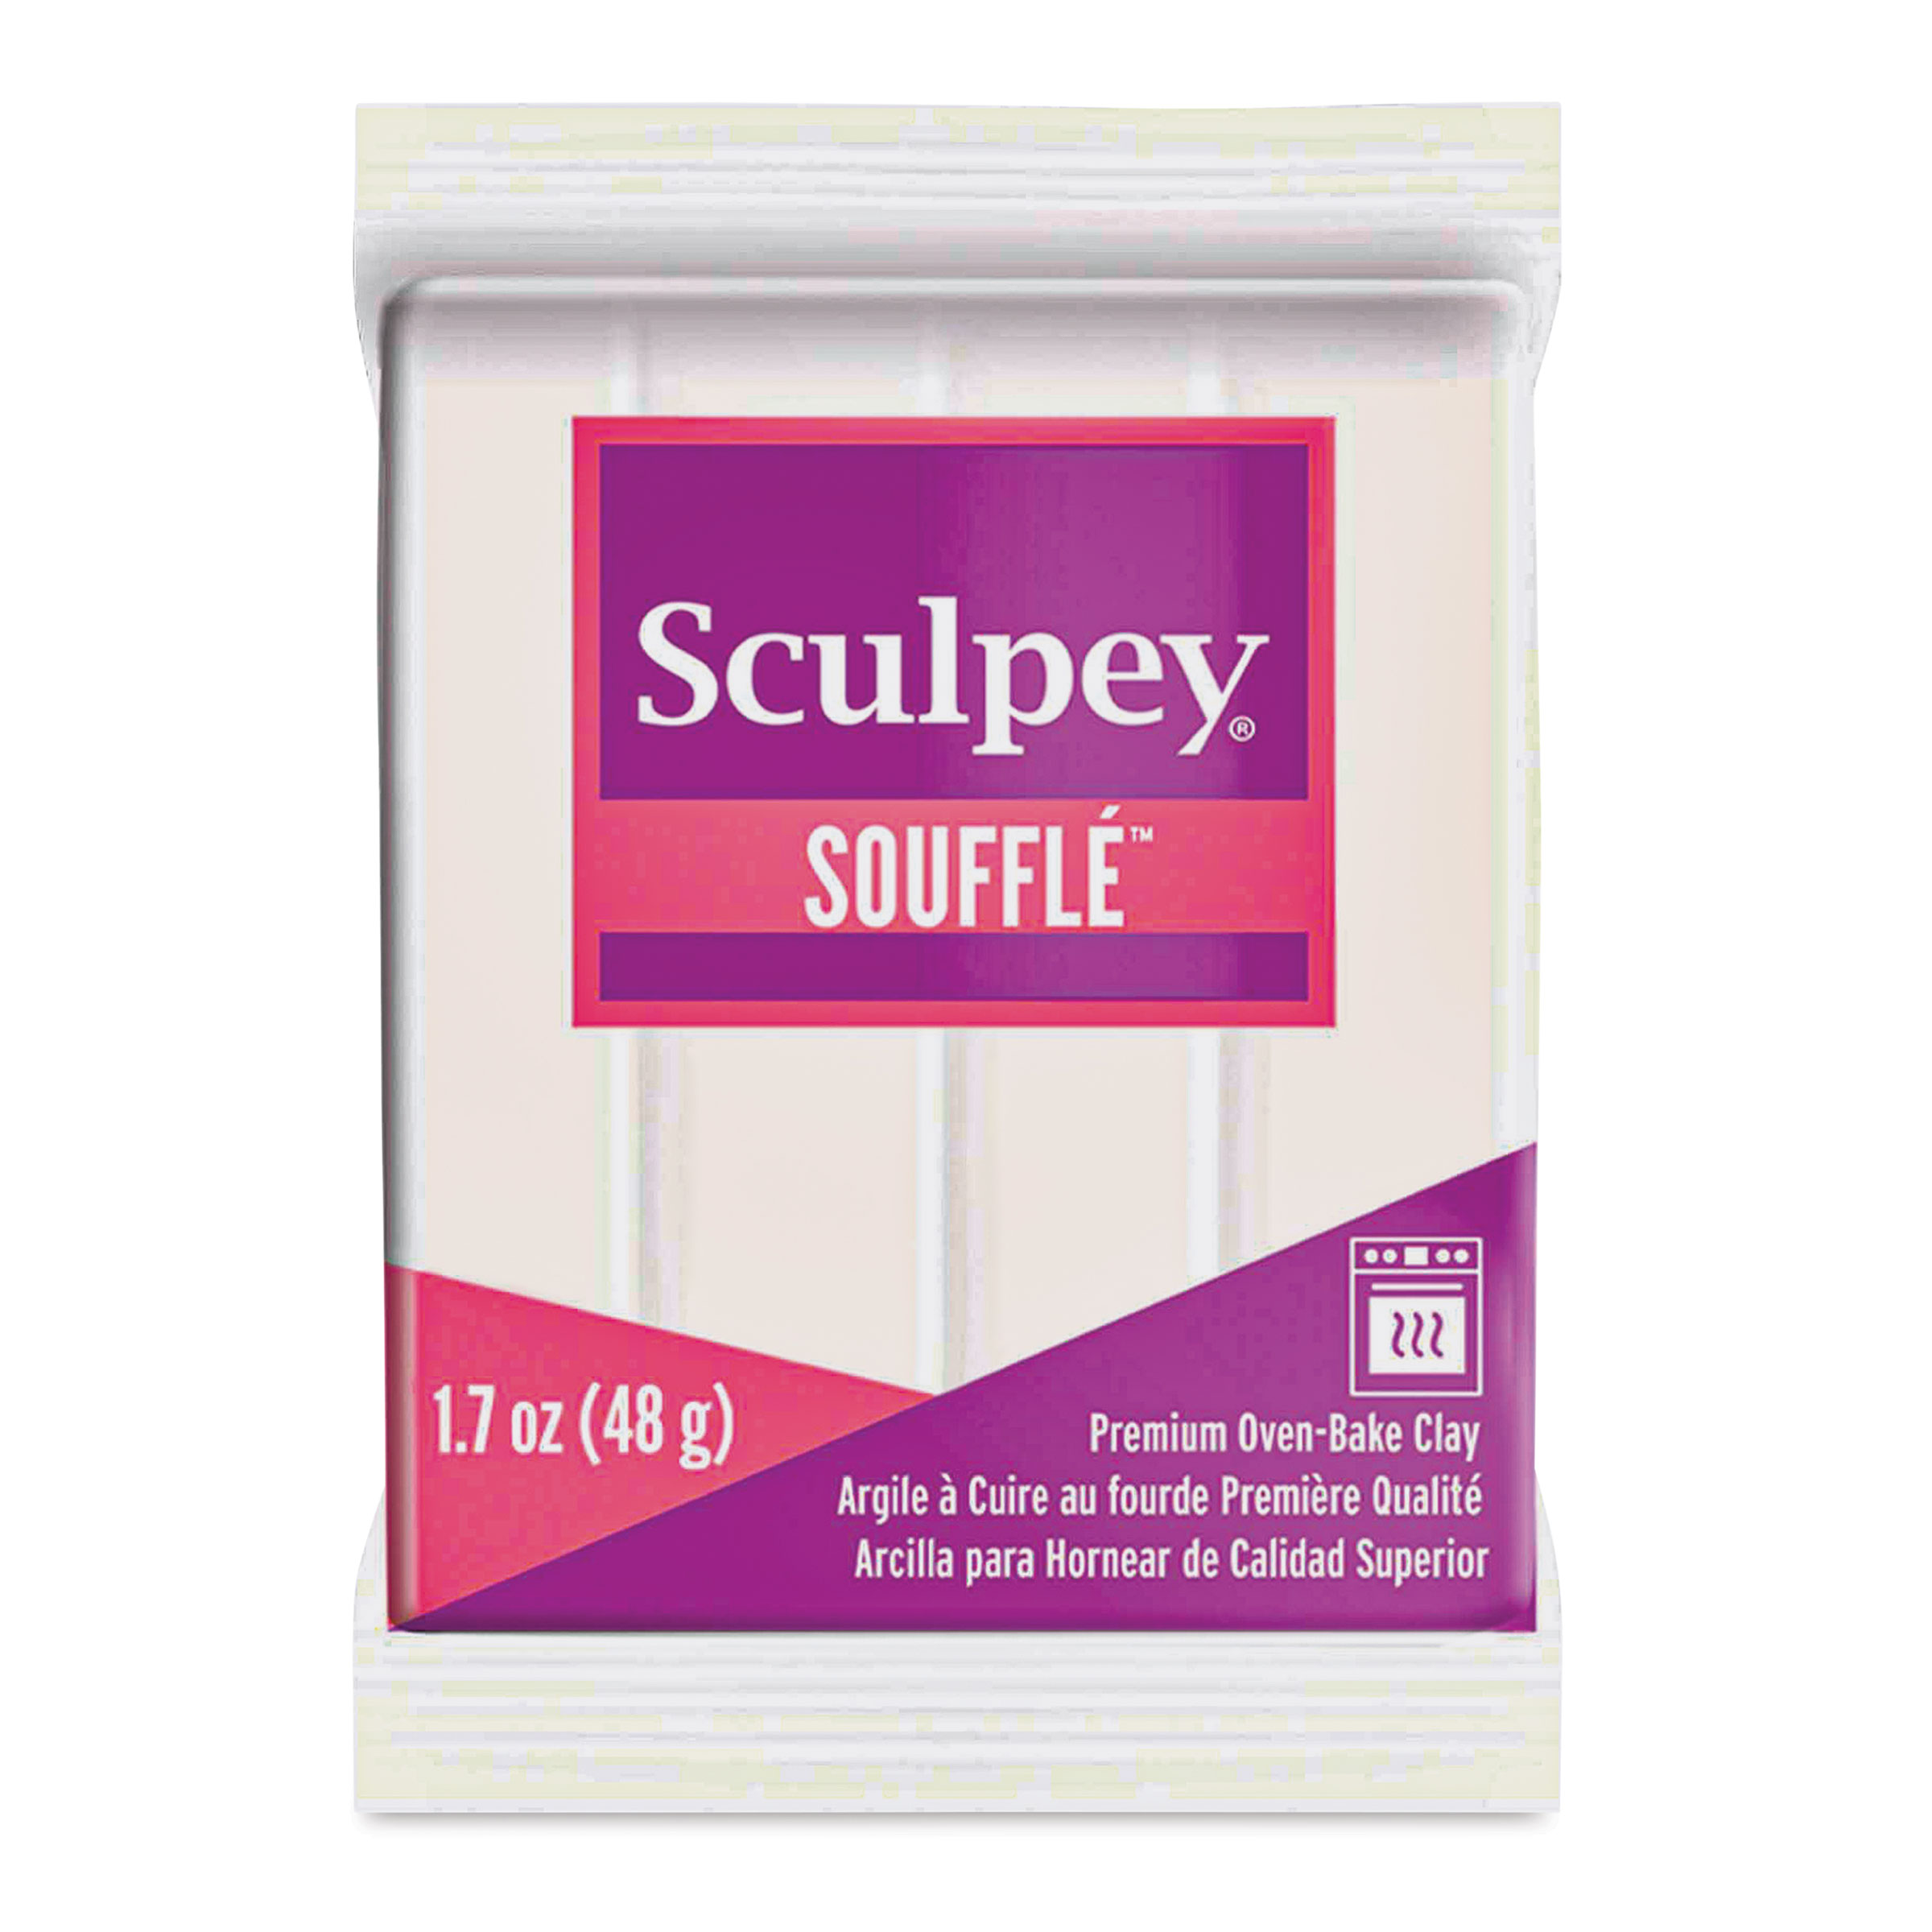 Sculpey Souffle - 7 oz bar, Poppy Seed